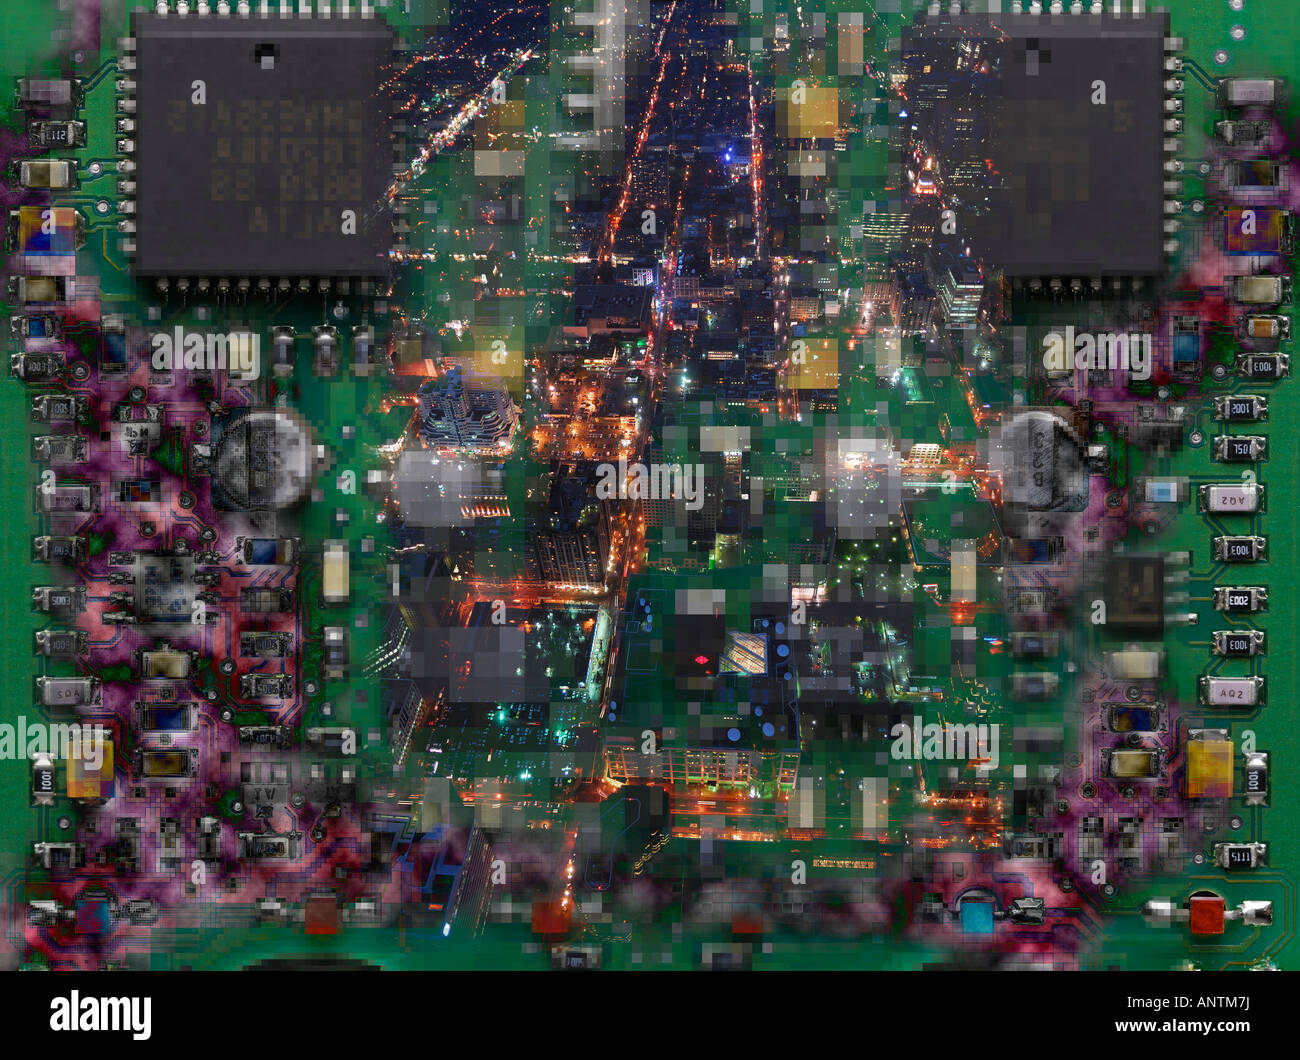 Stadt-Lichter in der Nacht auf Mikrochips und Elektronikplatine überlagert Stockfoto